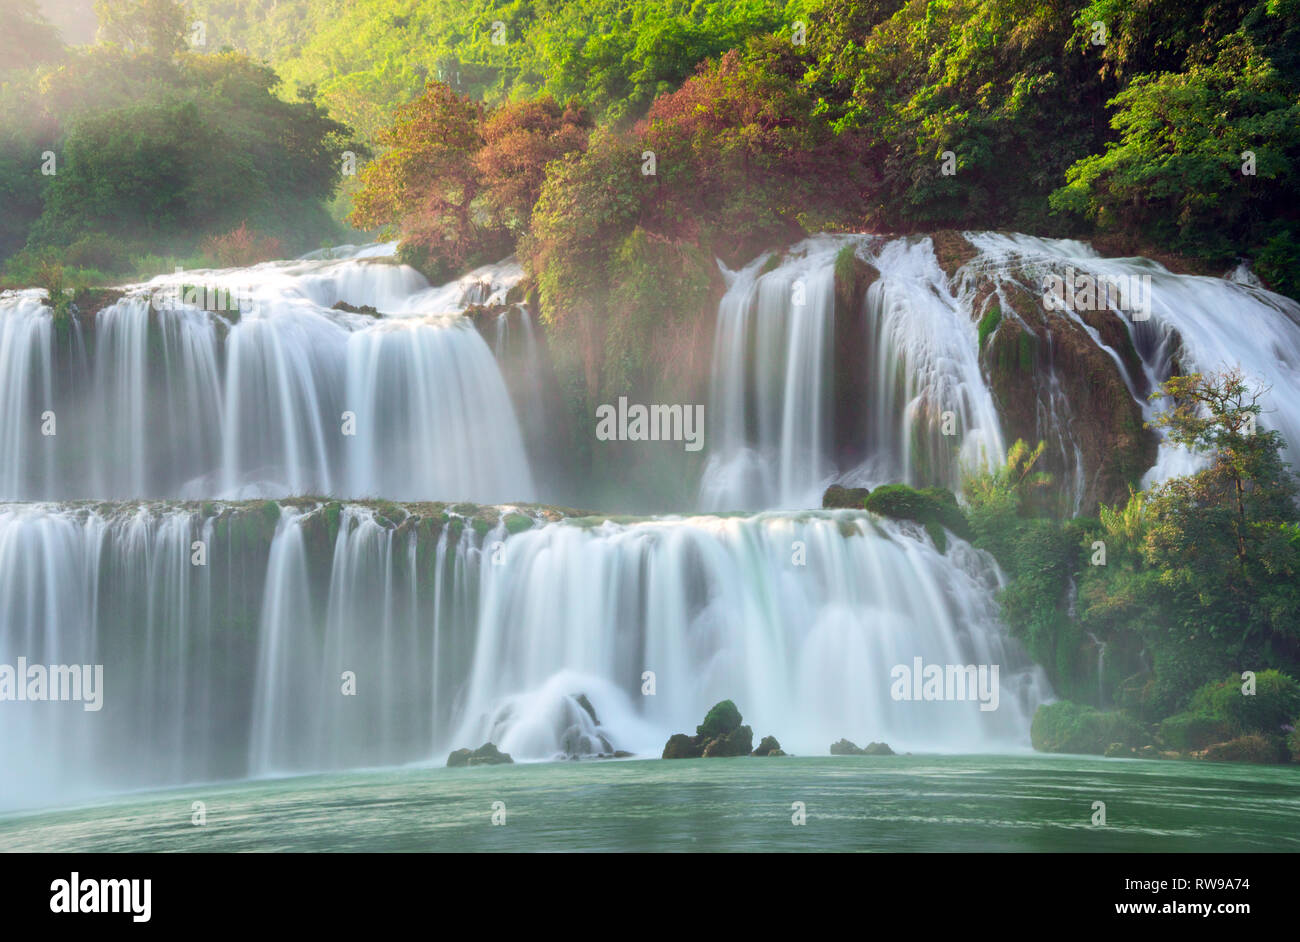 Ban Gioc Wasserfall in Cao Bang, Viet Nam - Die Wasserfälle befinden sich in einem Bereich mit ausgereiften Karstformationen entfernt waren die ursprünglichen Kalksteinschichten Schichten Stockfoto